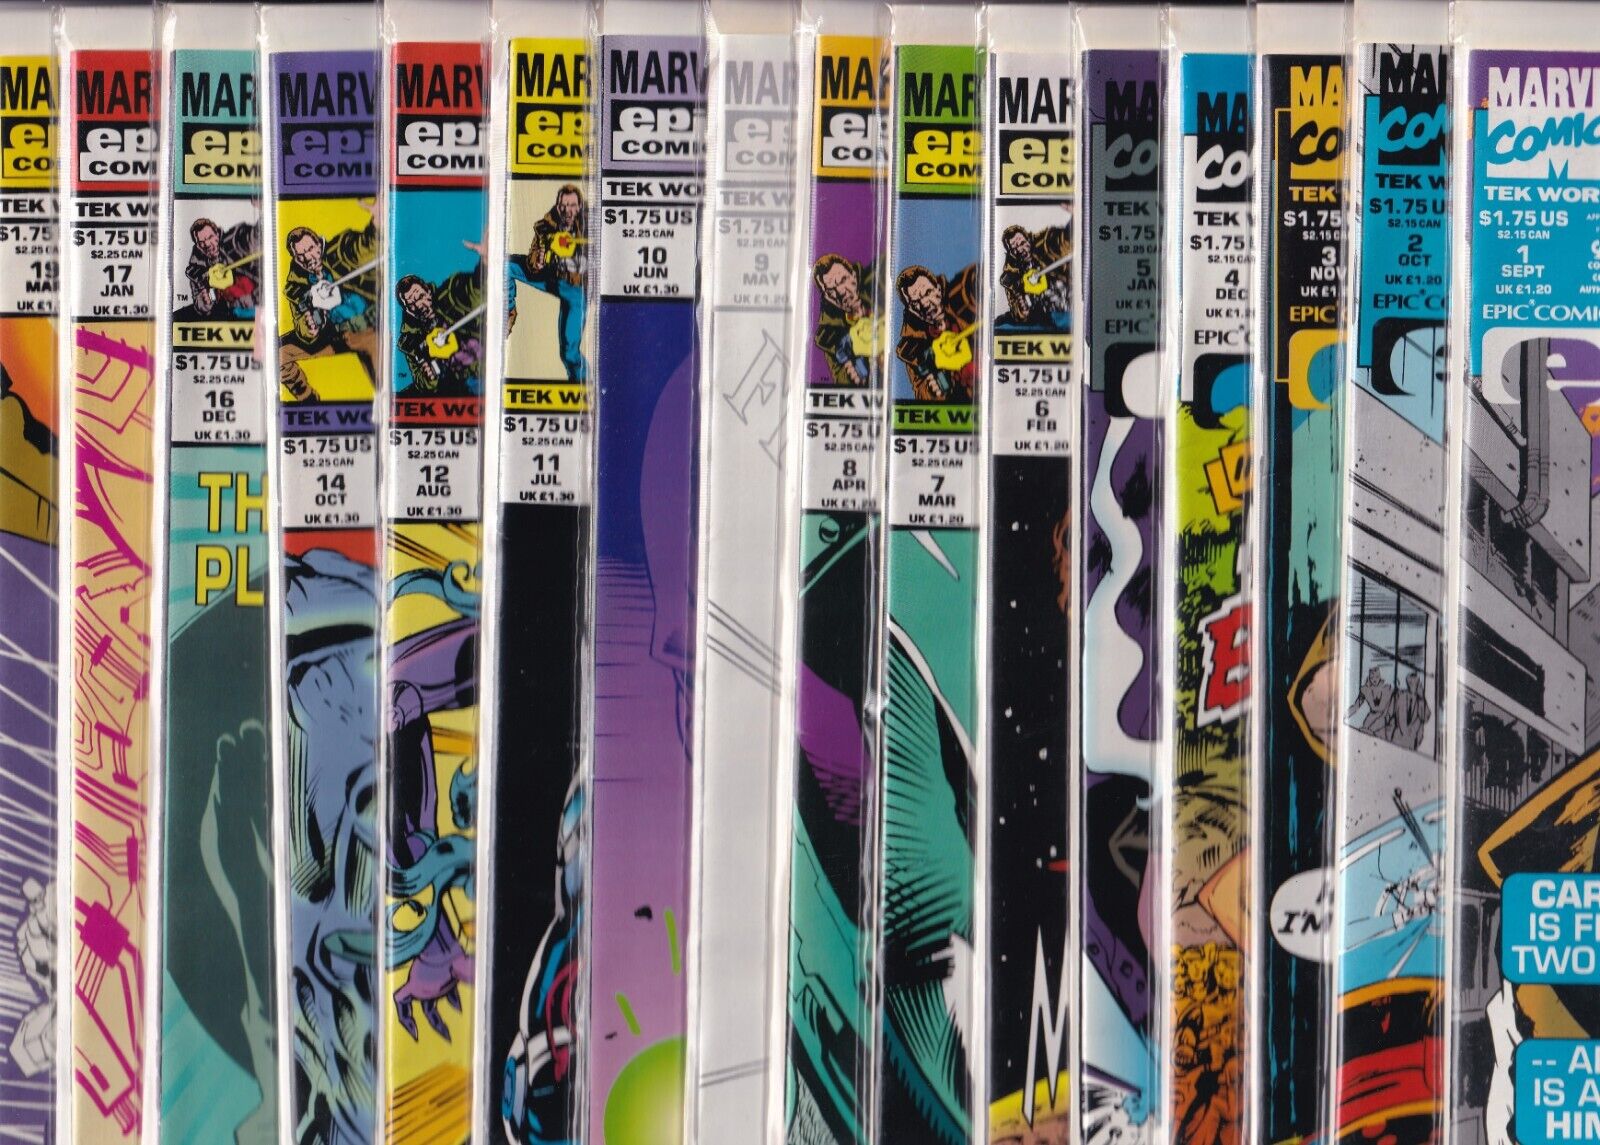 William Shatner's Tek World Issues #1-12, 14, 16, 17 & 19 (Marvel/Epic, 1992)